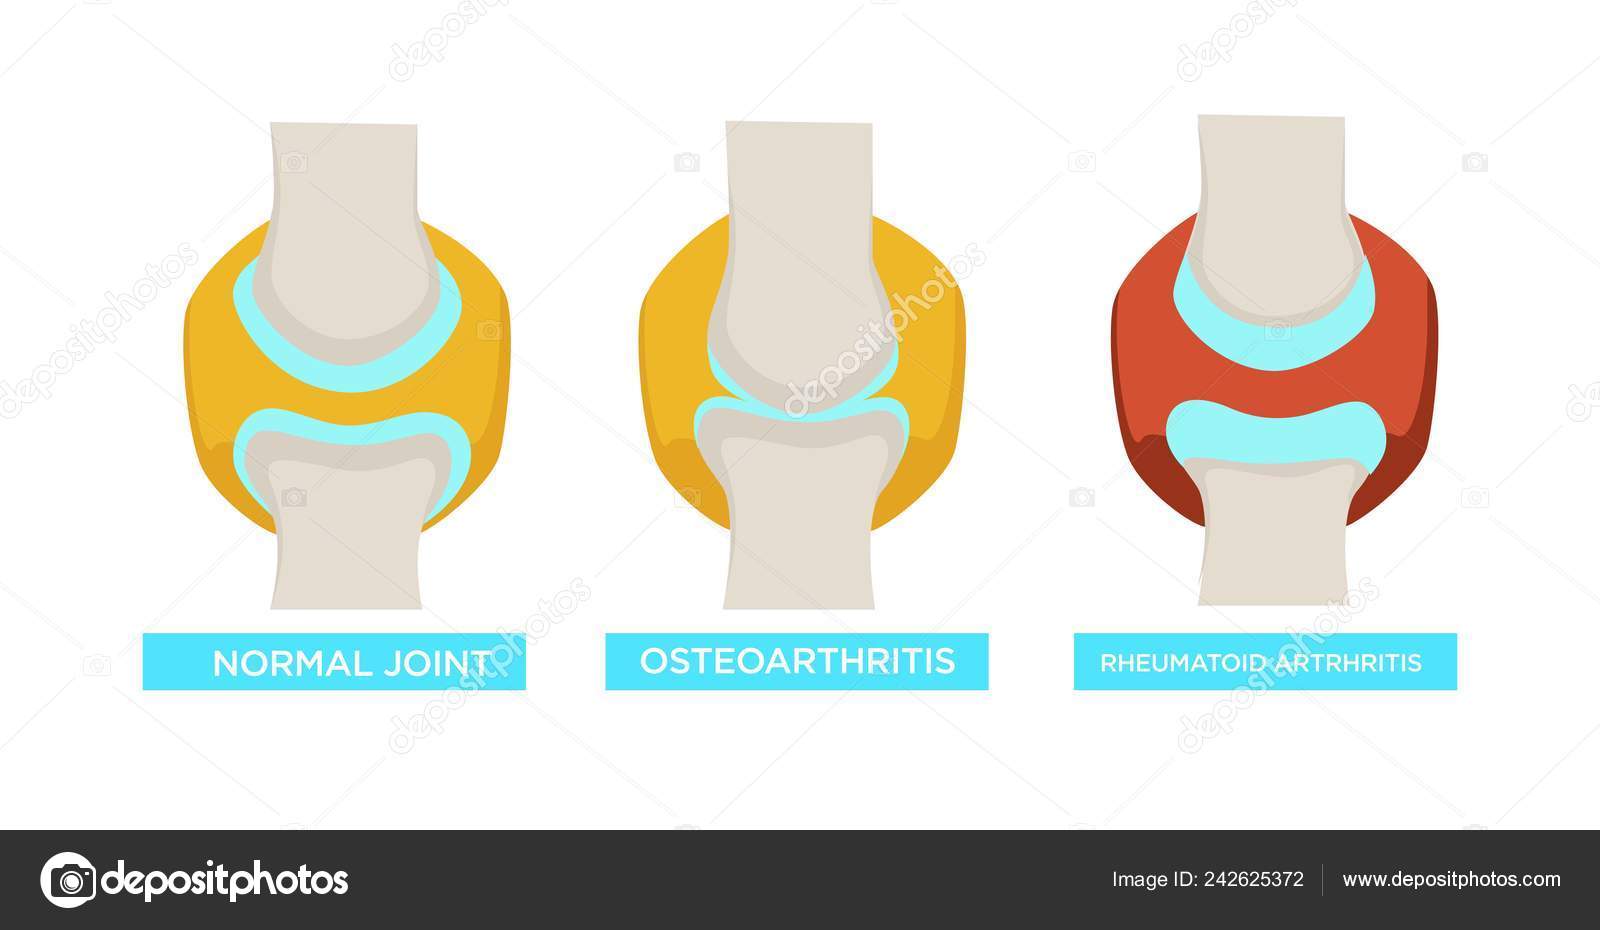 osteoarthritis csontbetegség mitől fáj a jobb vállam